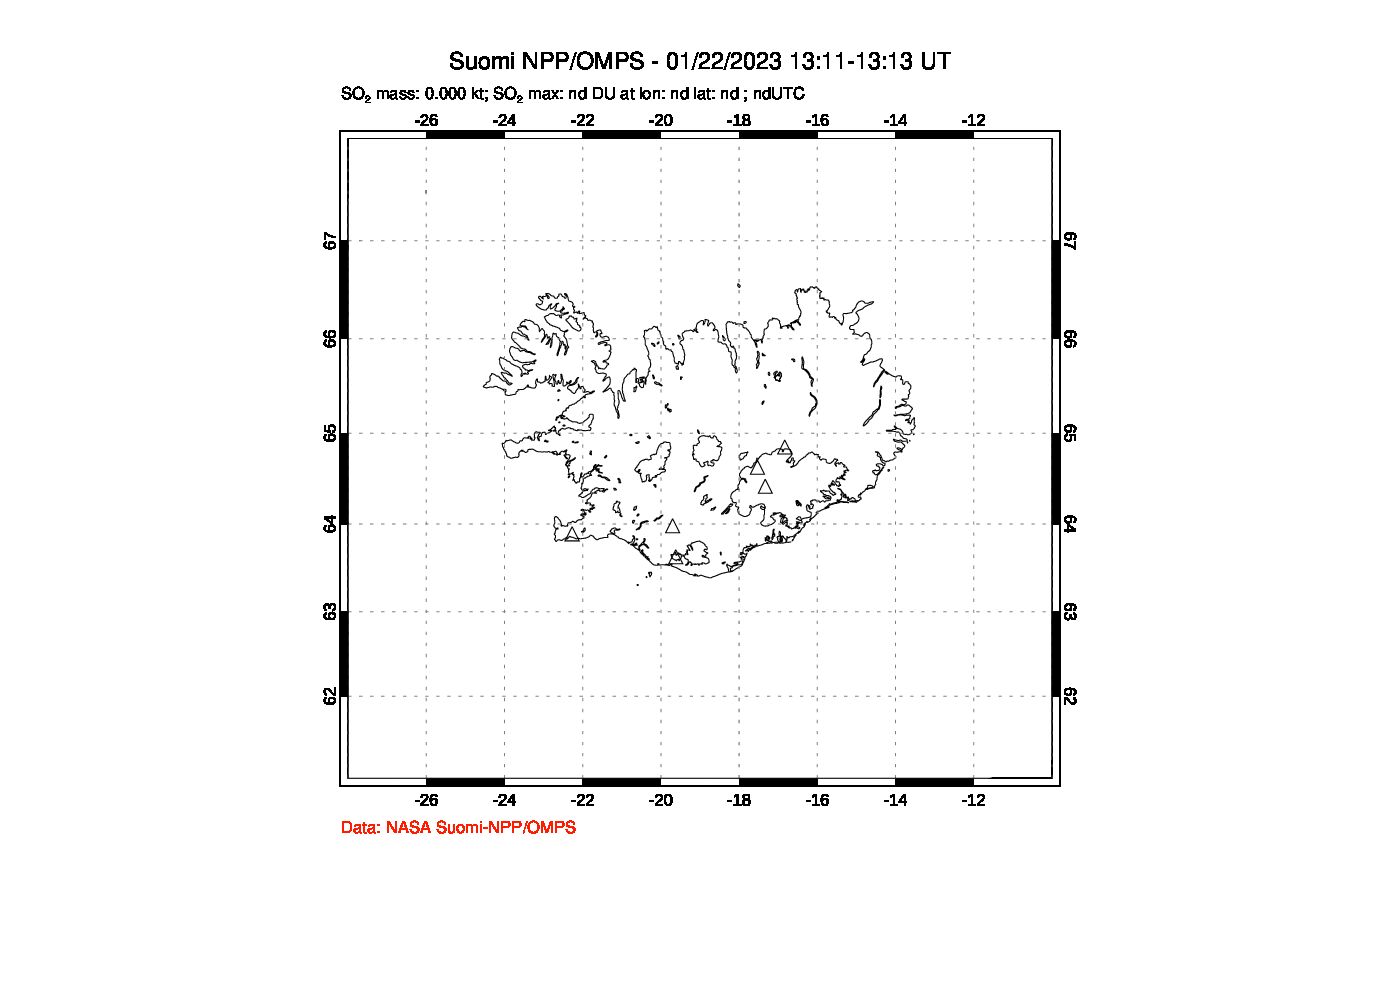 A sulfur dioxide image over Iceland on Jan 22, 2023.